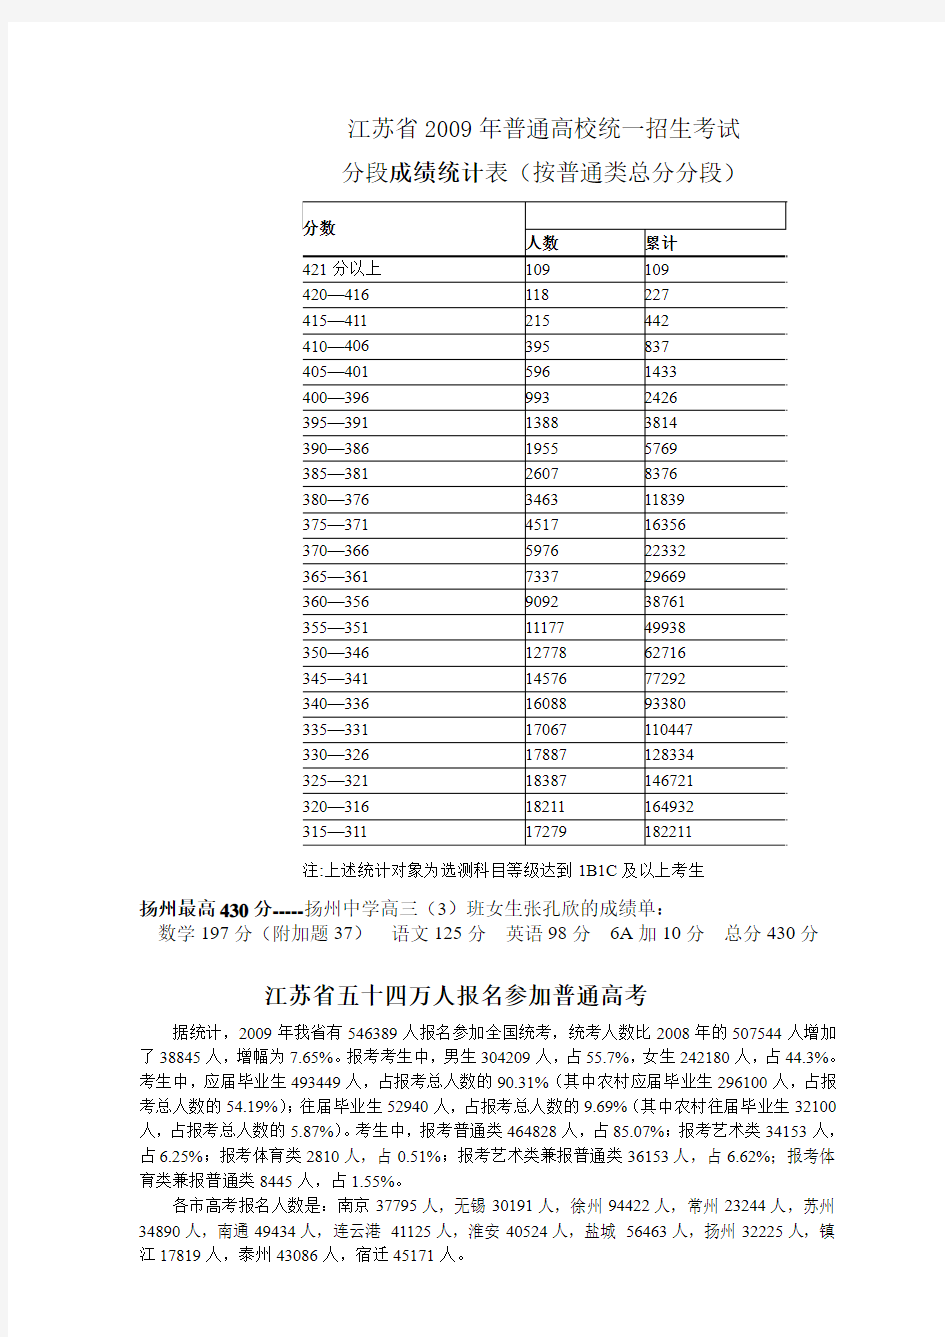 江苏省2009年高考人数及考试成绩